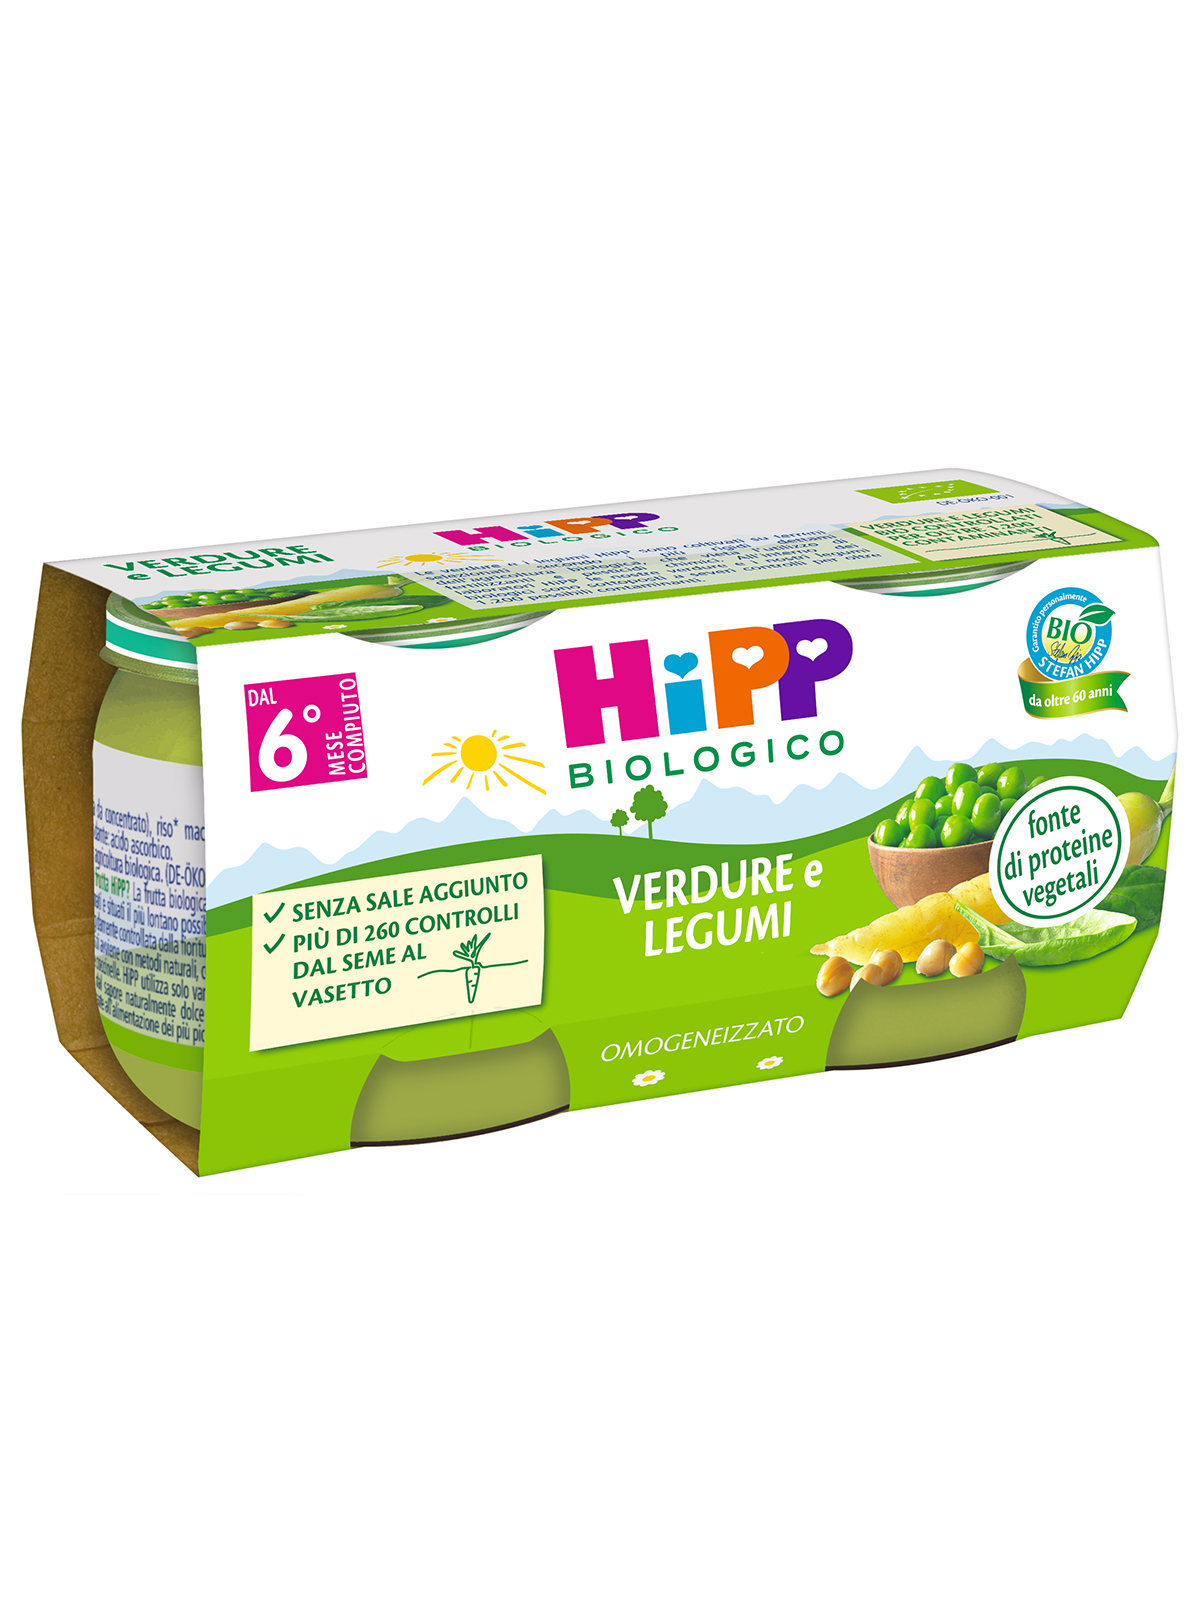 Hipp - omogeneizzato verdure e legumi 2x80g - Hipp